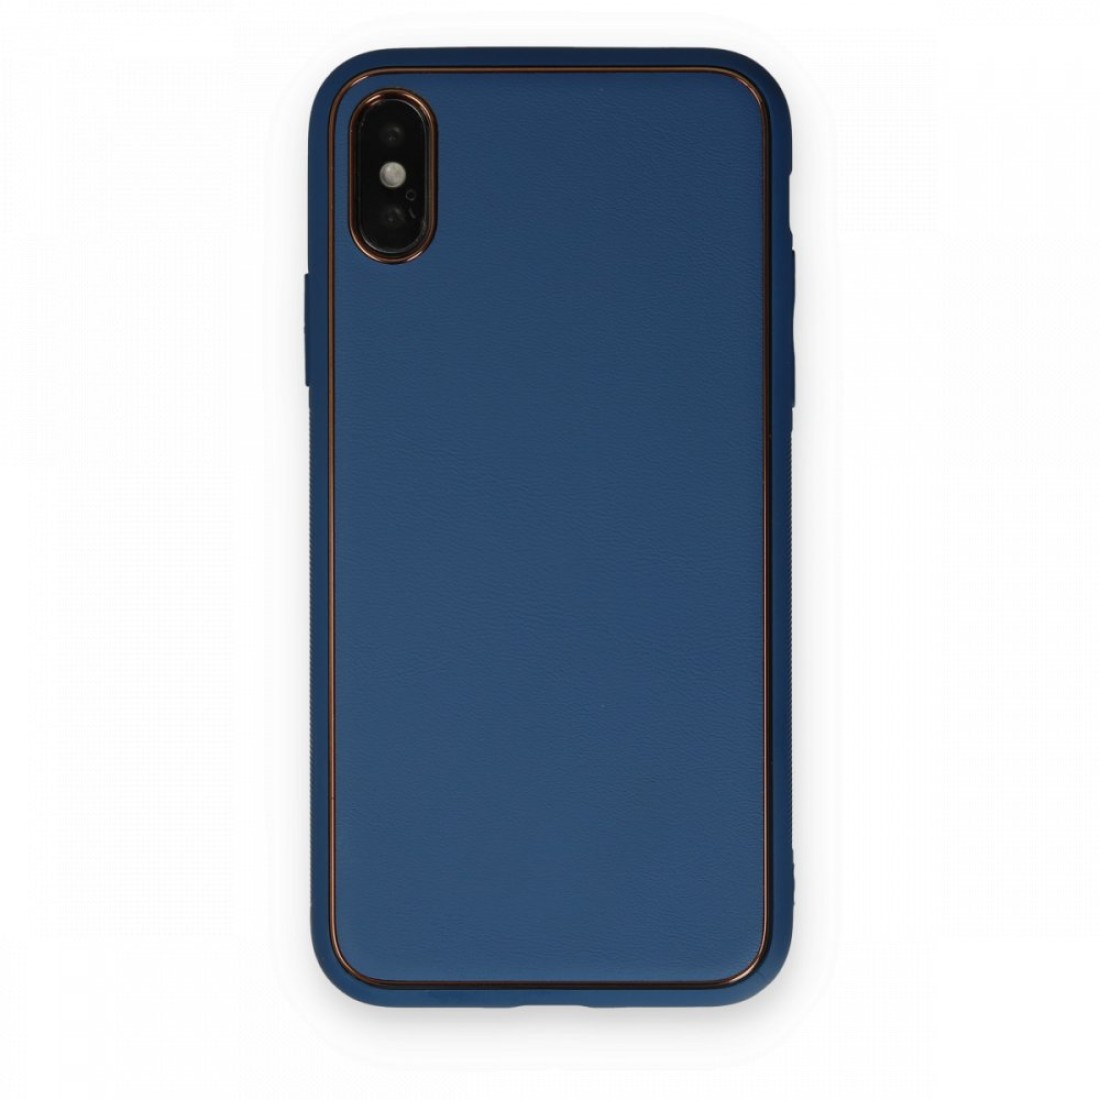 Apple iPhone X Kılıf Coco Deri Silikon Kapak - Açık Mavi